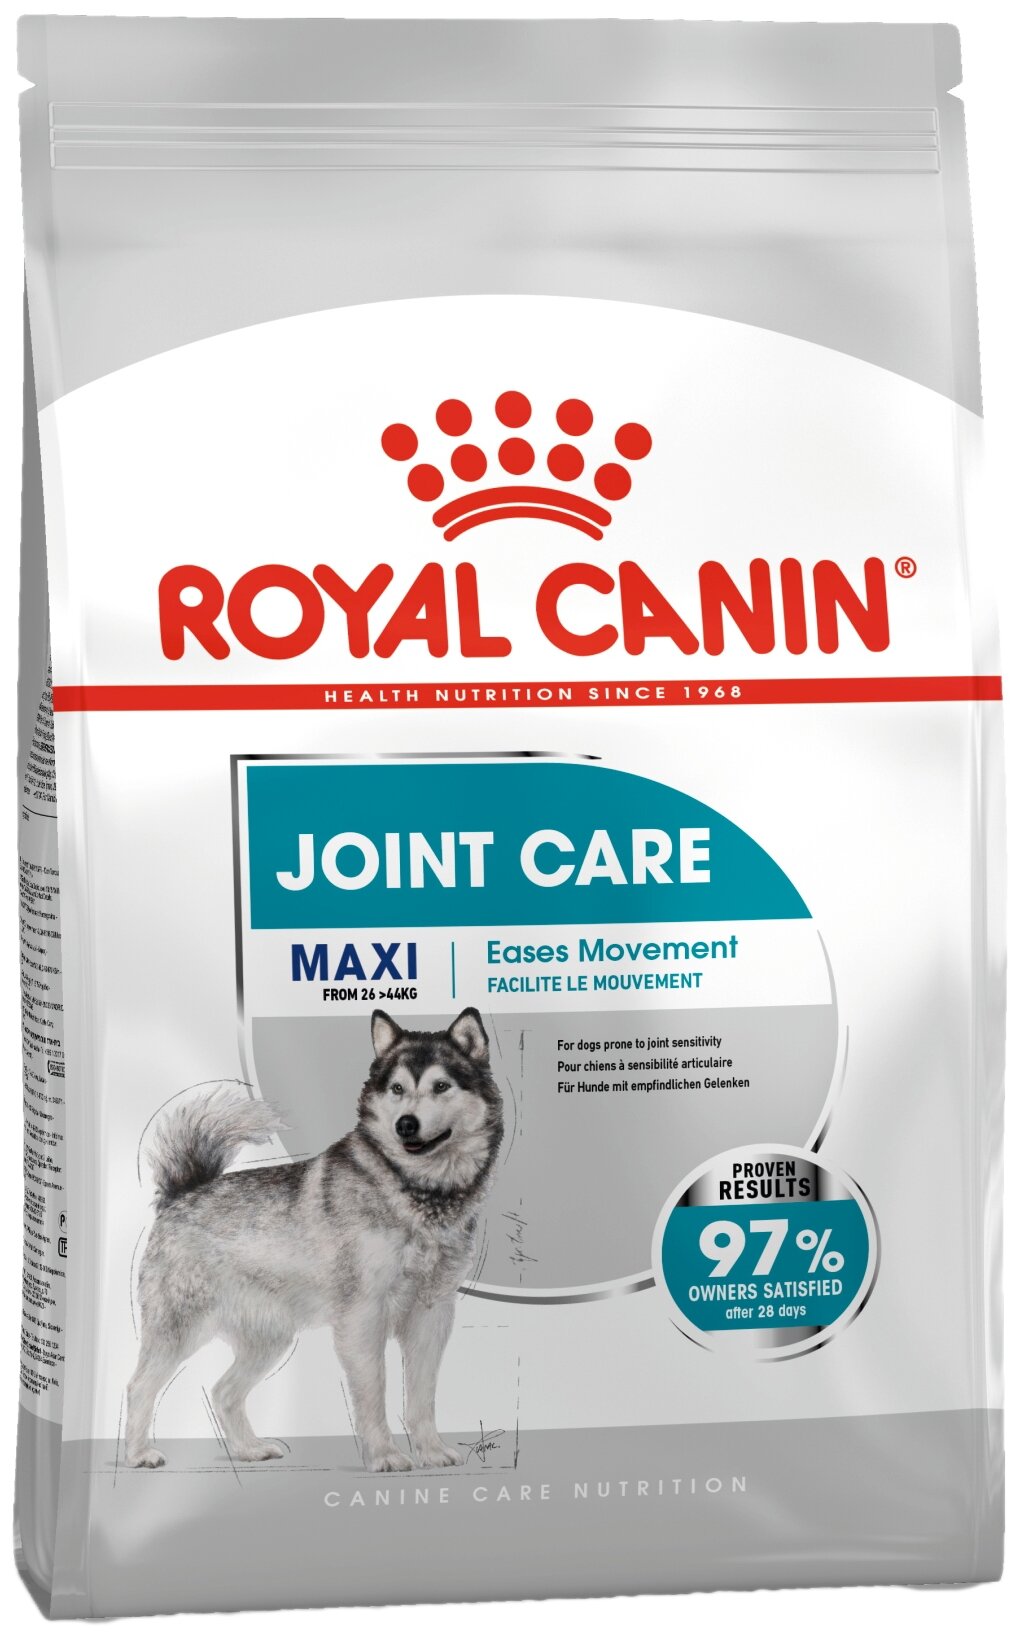 ROYAL CANIN MAXI JOINT CARE 10 кг корм для собак крупных пород c повышенной чувствительностью суставов